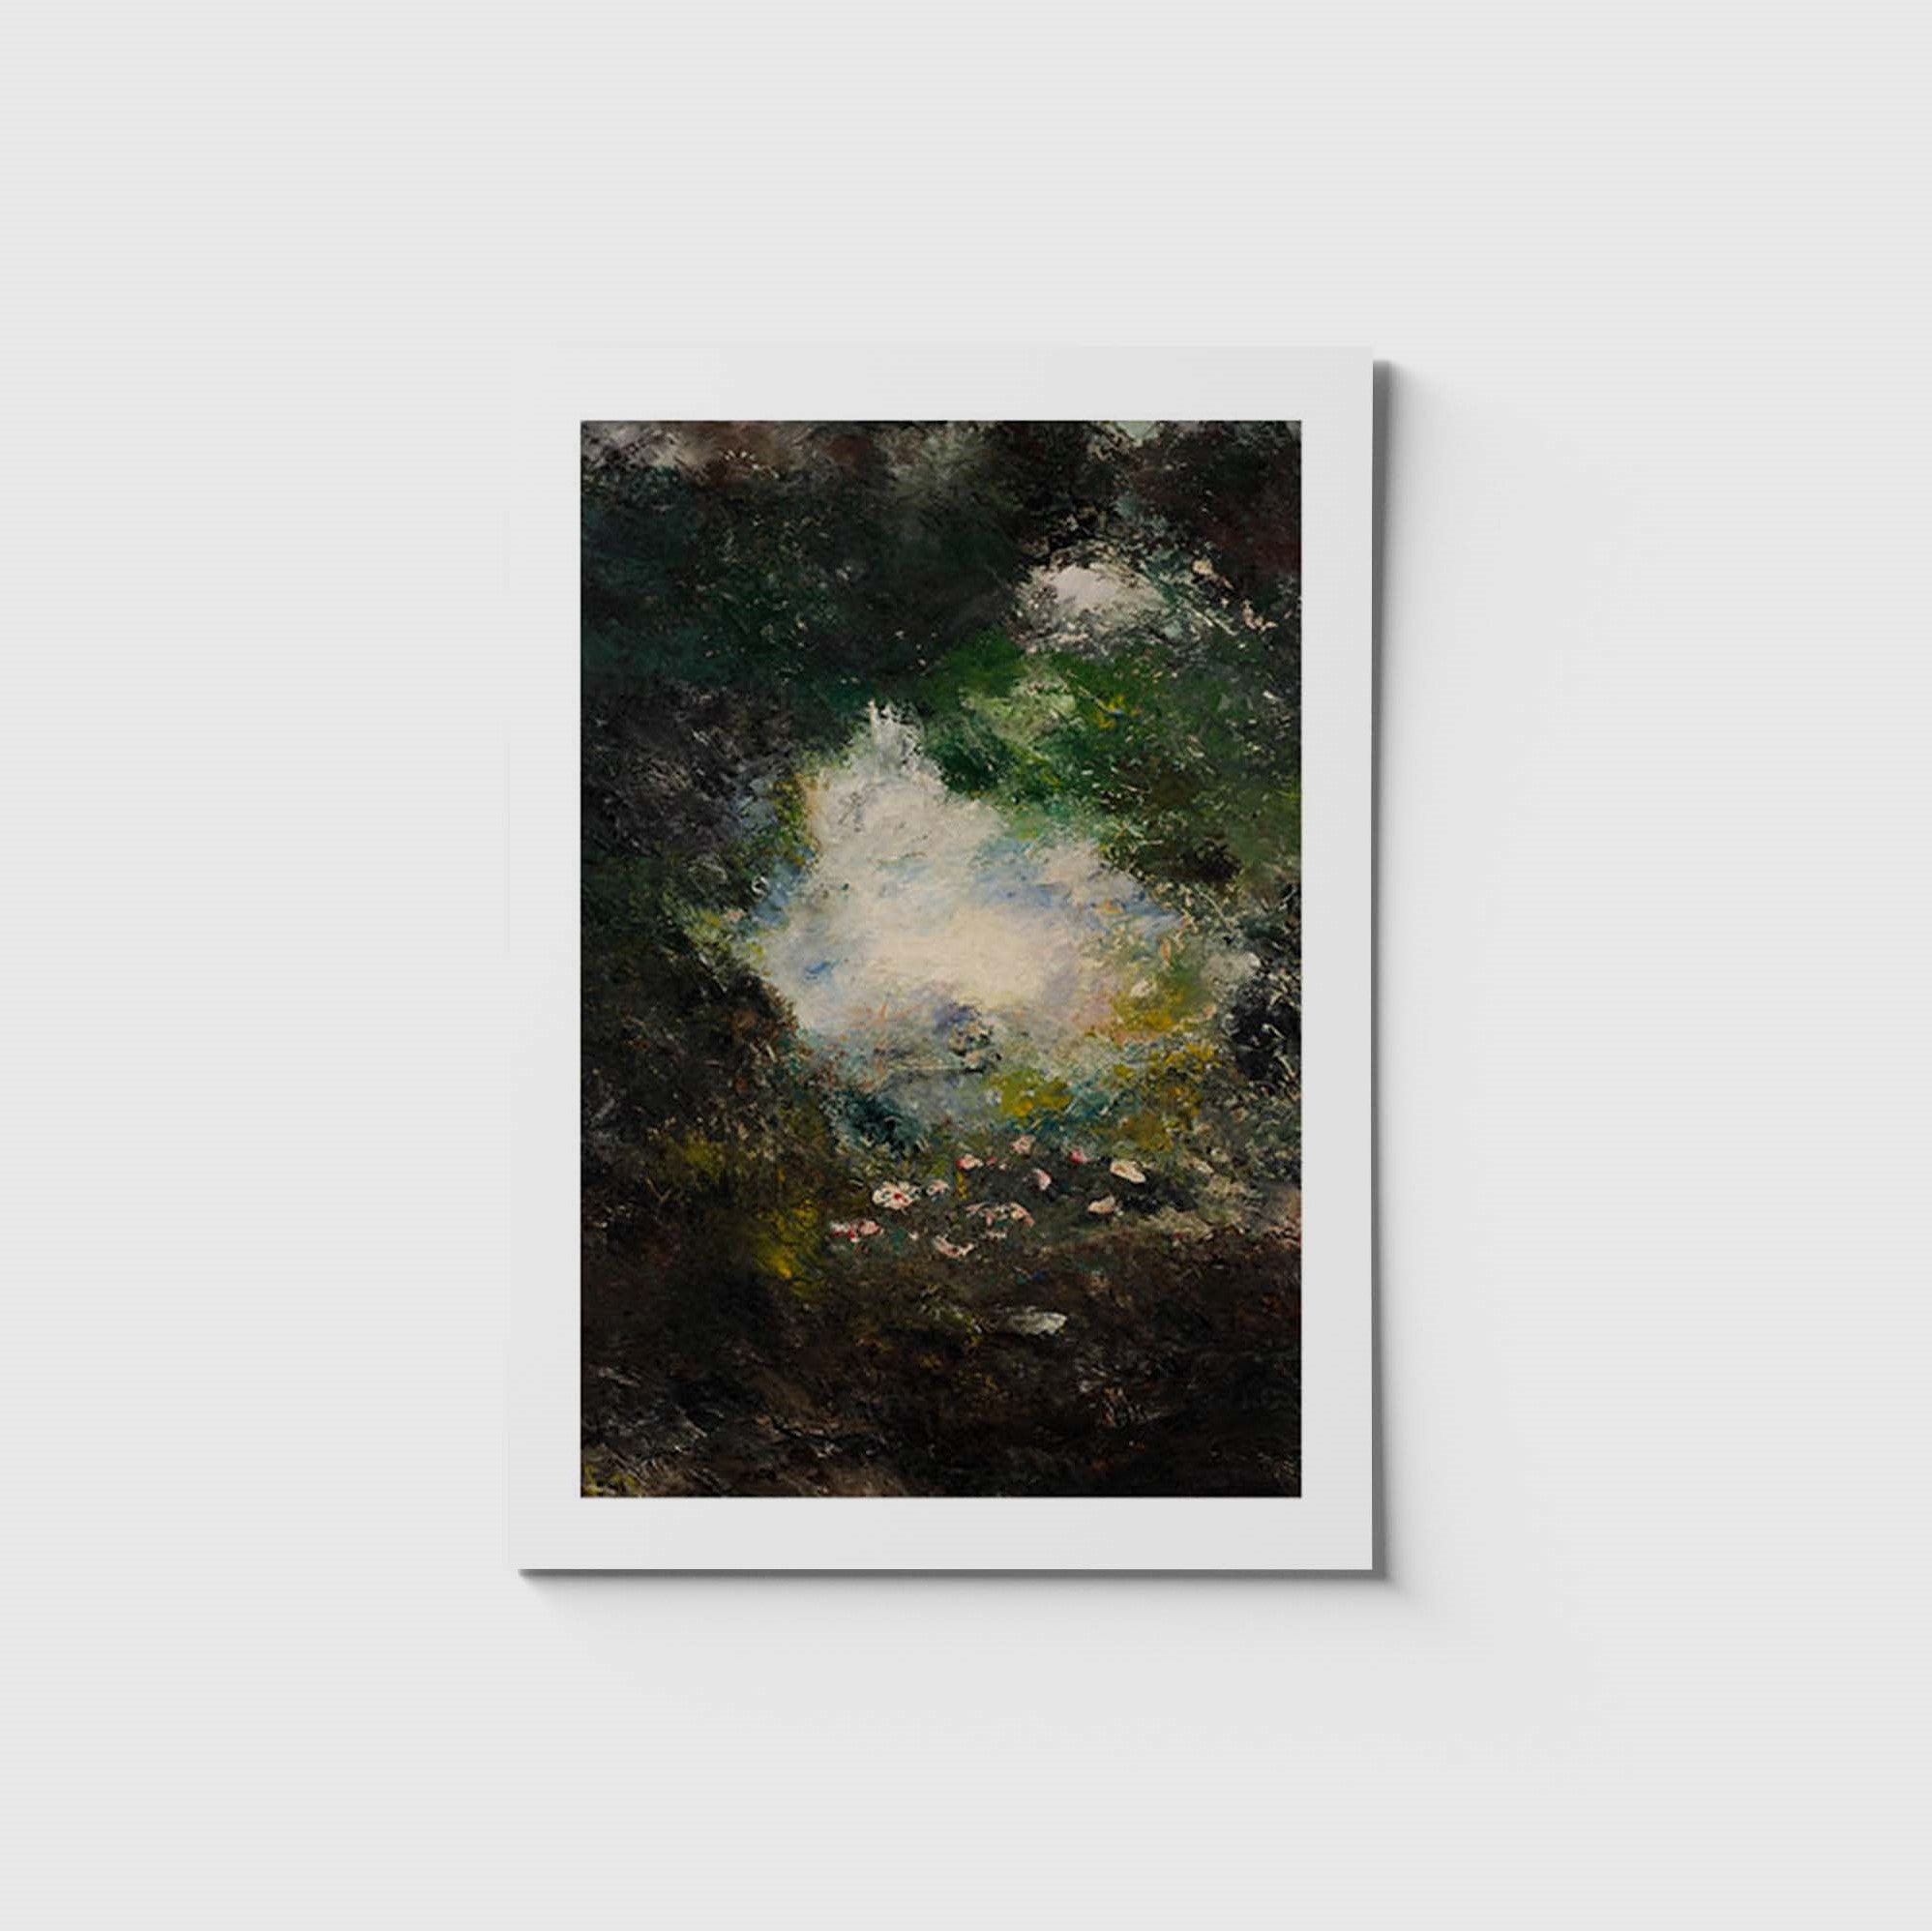 stort vykort med August Strindbergs målning Underlandet